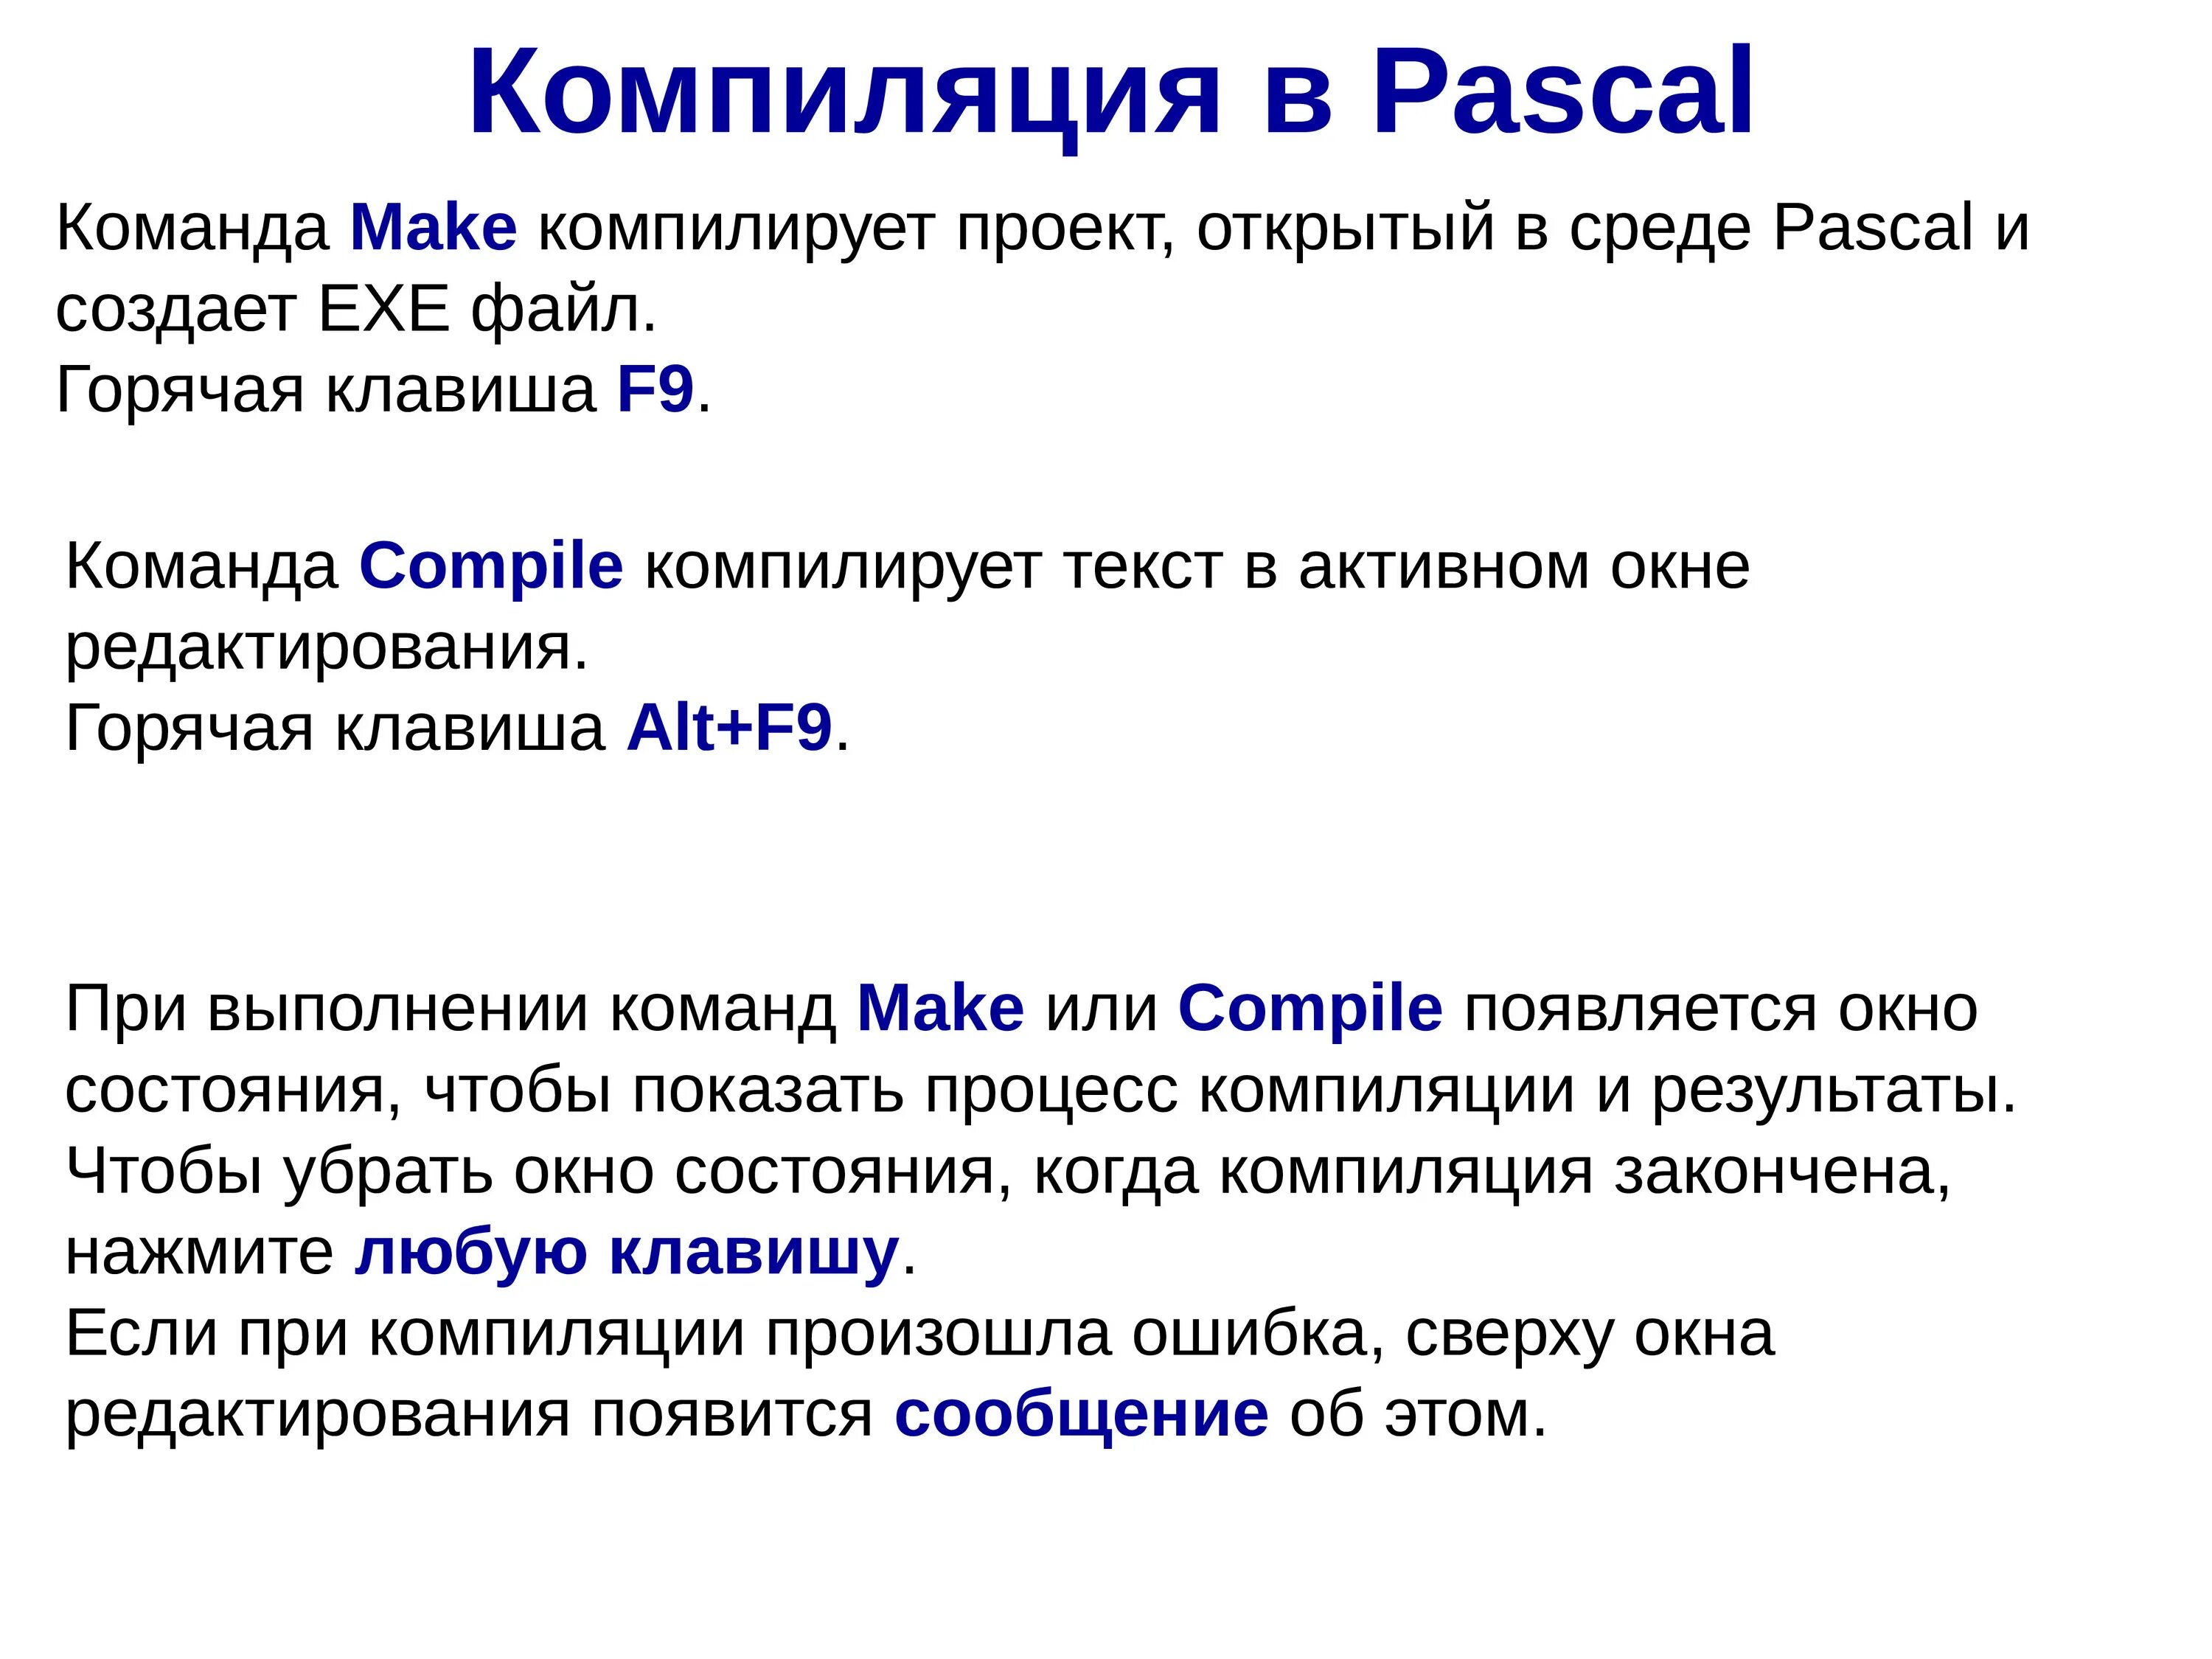 Pascal ввод вывод. Организация ввода и вывода данных презентация. Организация ввода и вывода данных в Паскале. Команда copy в Паскале. Компиляция кода.